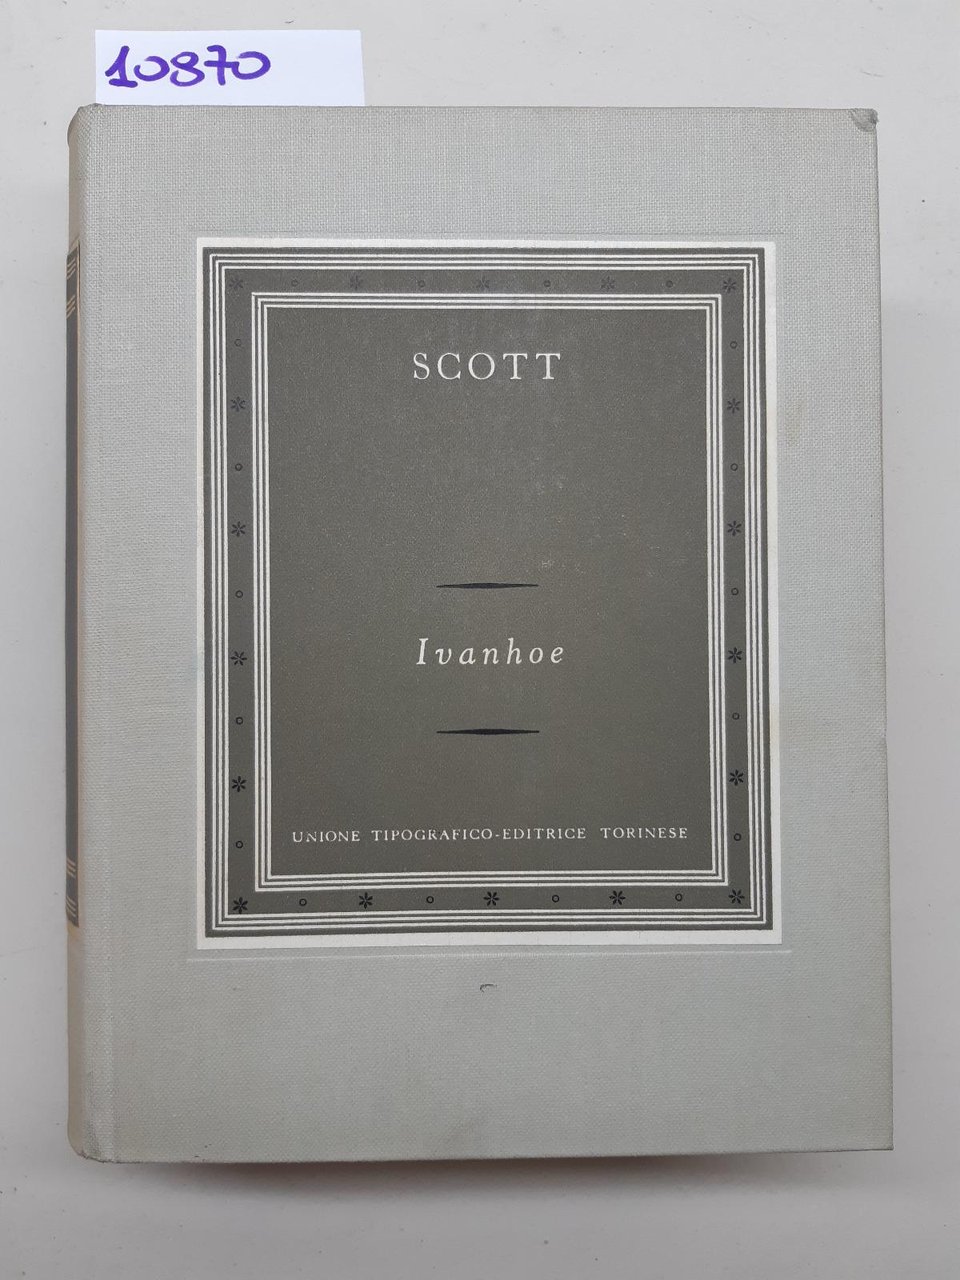 Scott Ivanhoe UTET 1957 3∞ ristampa della 1∞ edizione